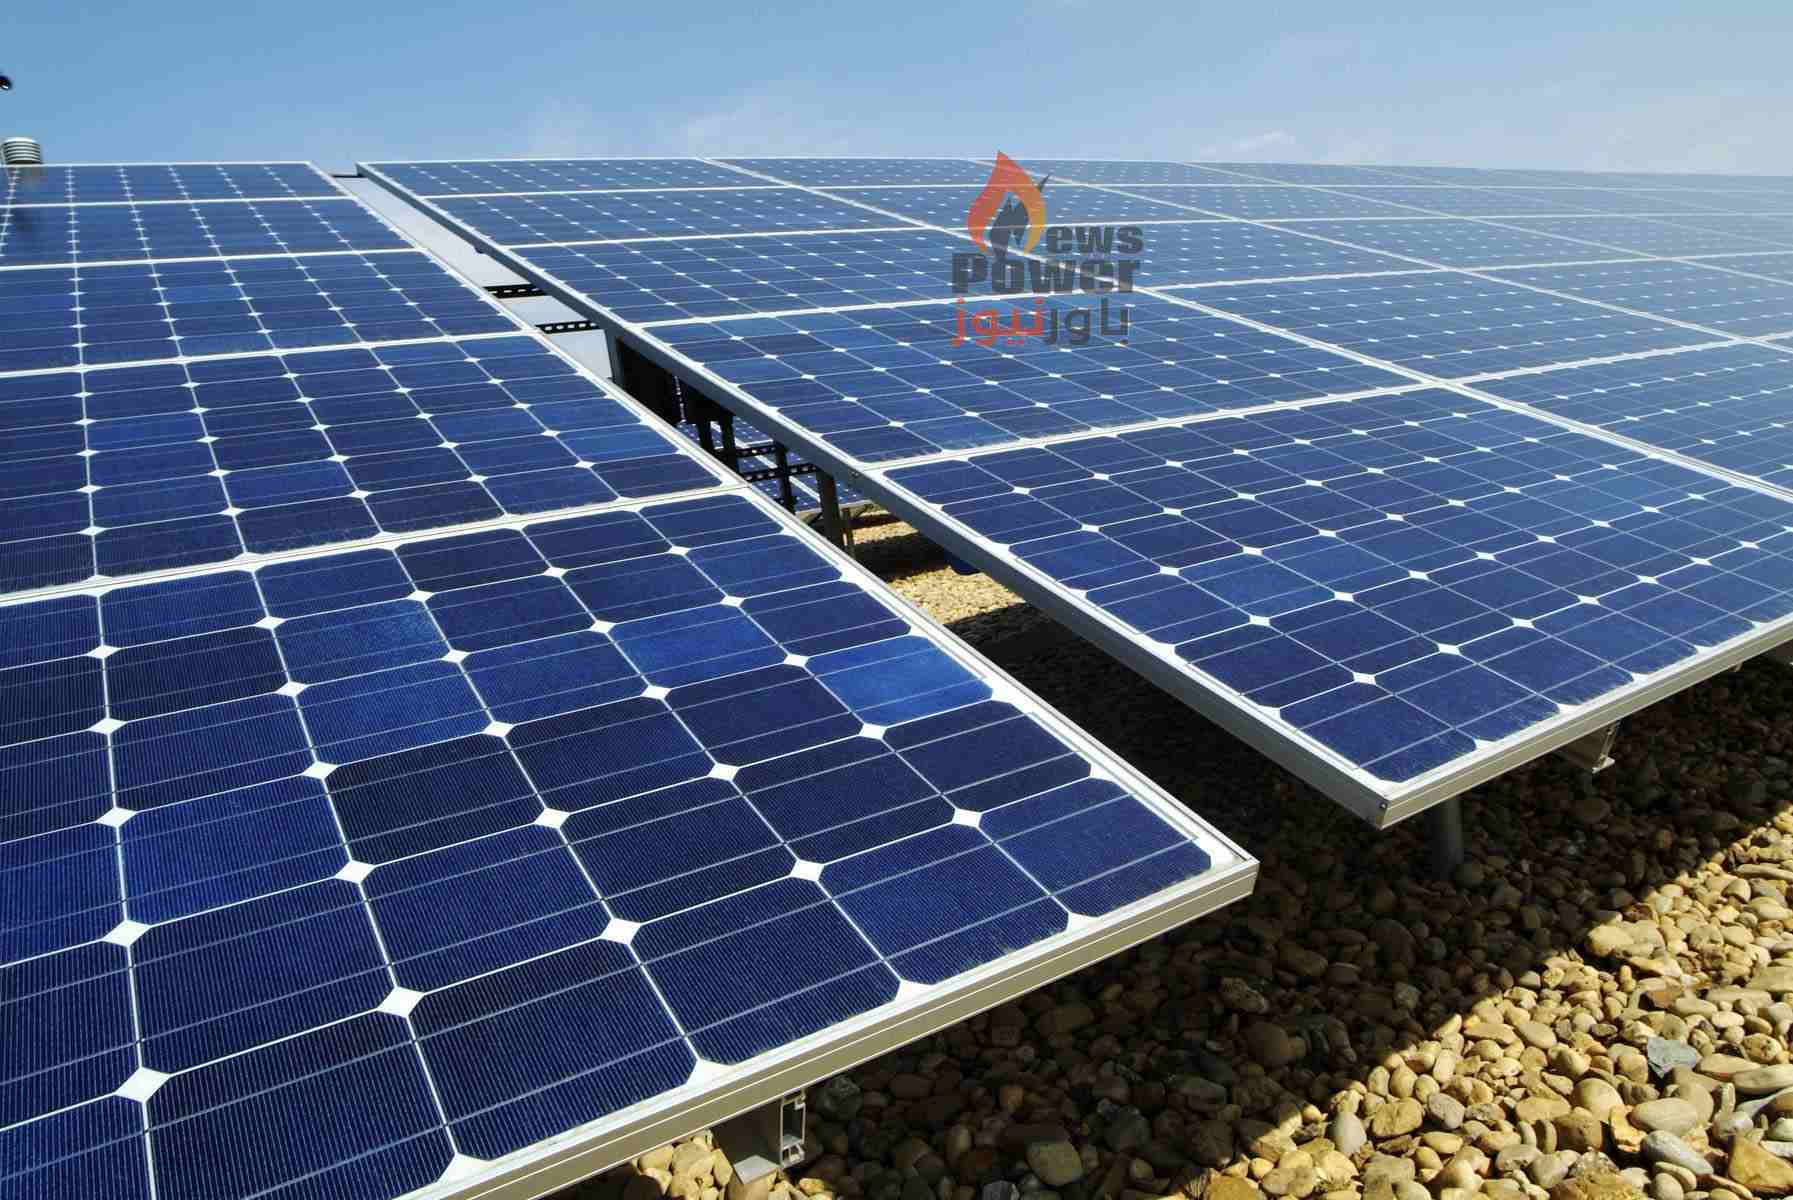 المطورون الثلاث لمشاريع الطاقة الشمسية ينتظرون الآن تعديلاً نهائياً من الحكومة فى اتفاقية حق الانتفاع تمهيداً للتوقيع وبدء التنفيذ